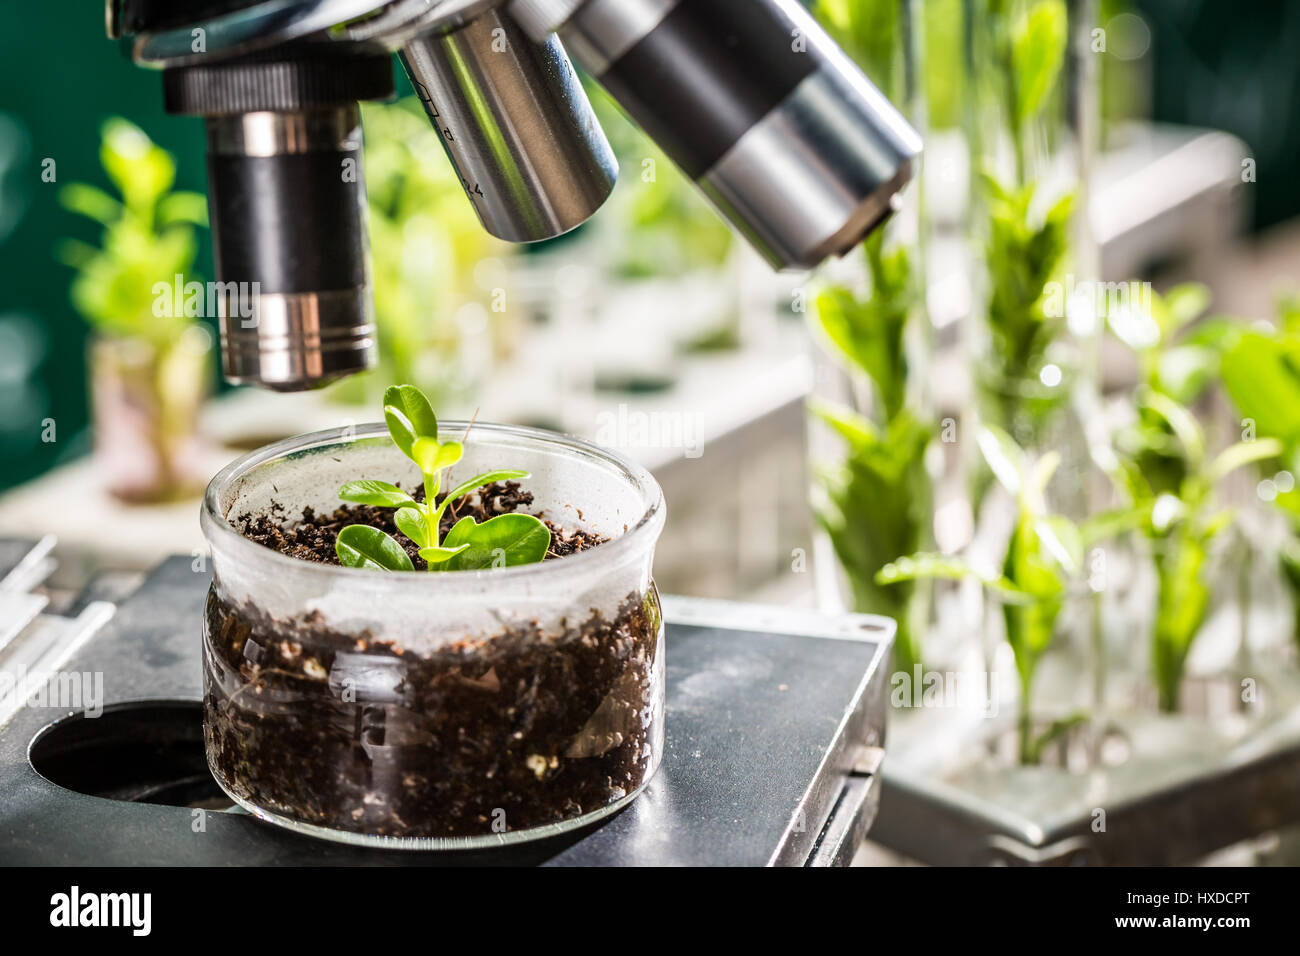 Academic laboratory exploring new methods of plant breeding Stock Photo